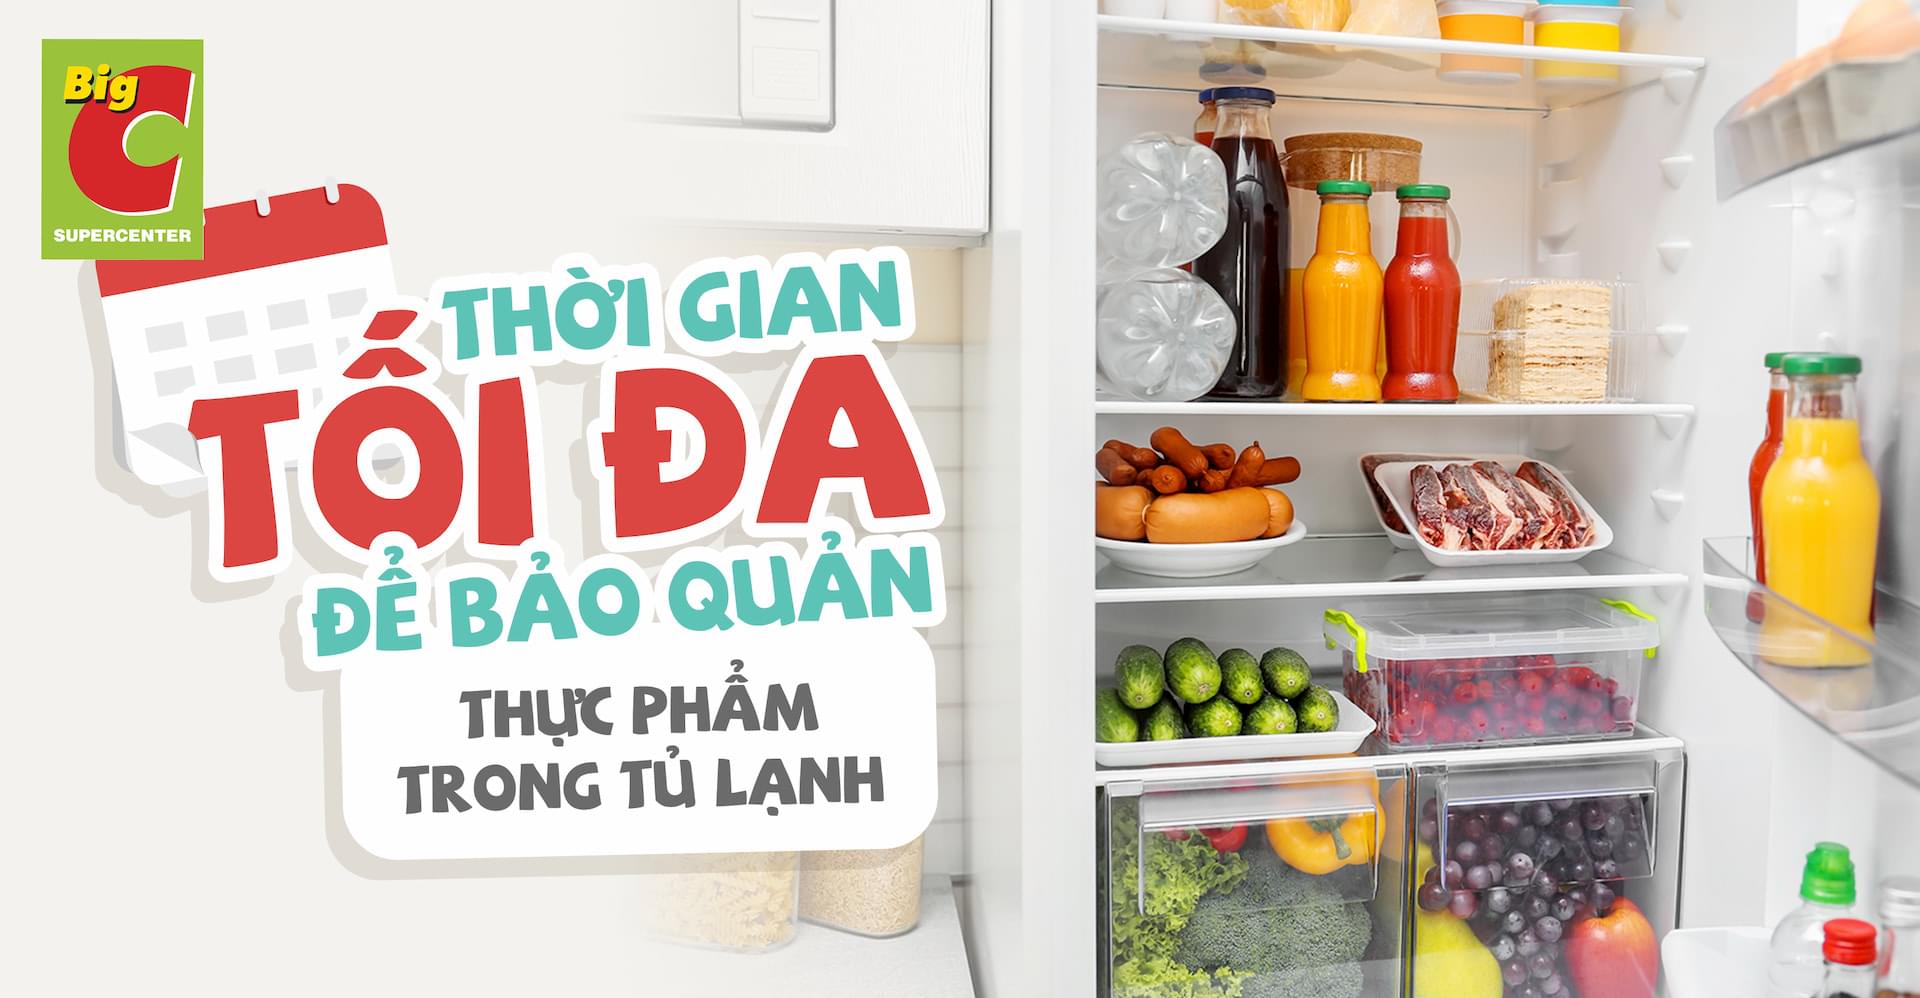 Thời gian tối đa để bảo quản thực phẩm trong tủ lạnh là bao lâu?